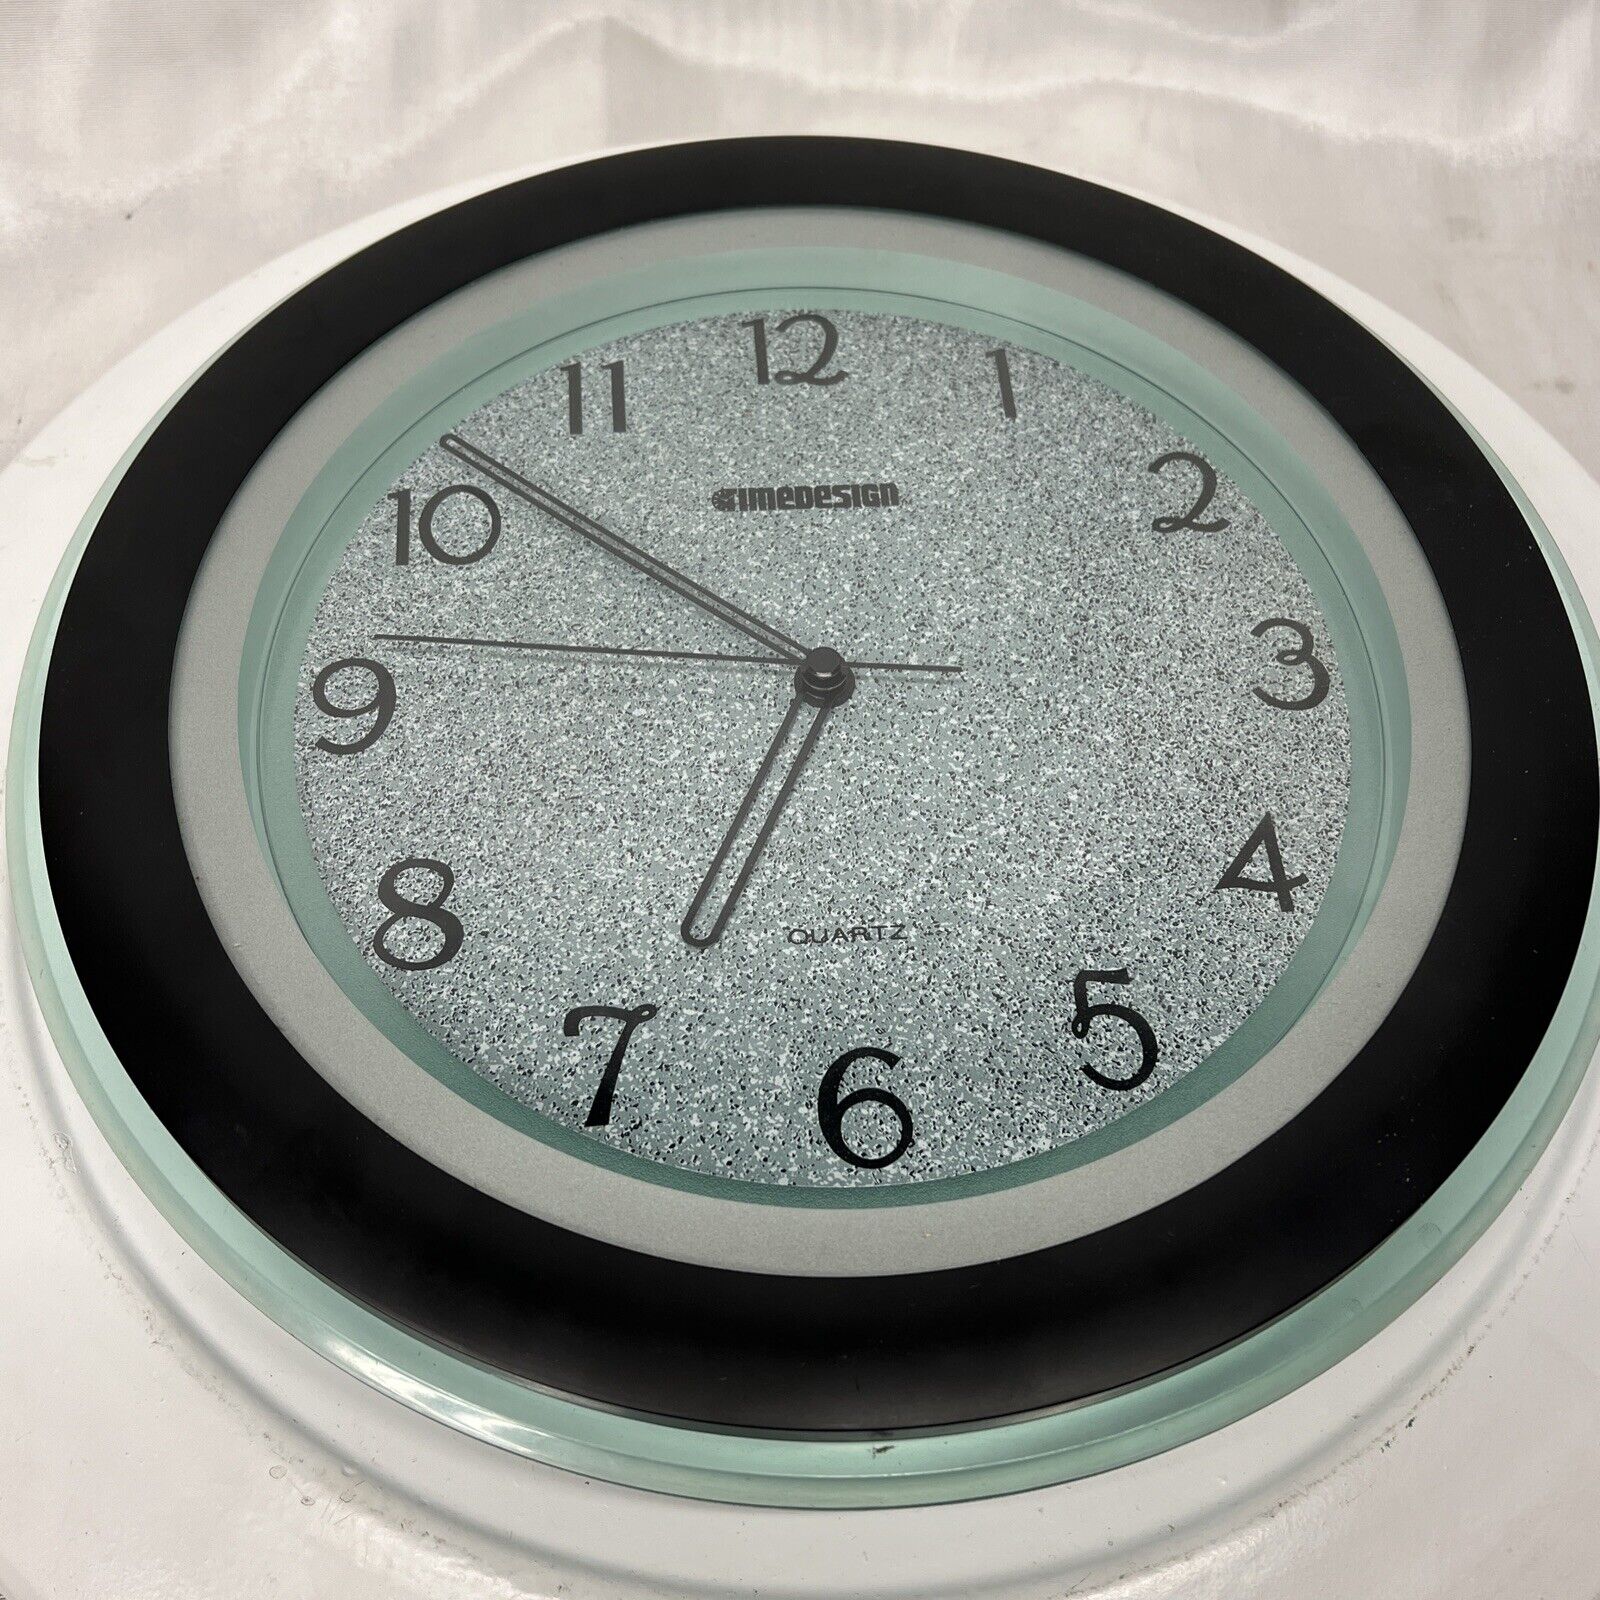 Timedesign Quartz Clock